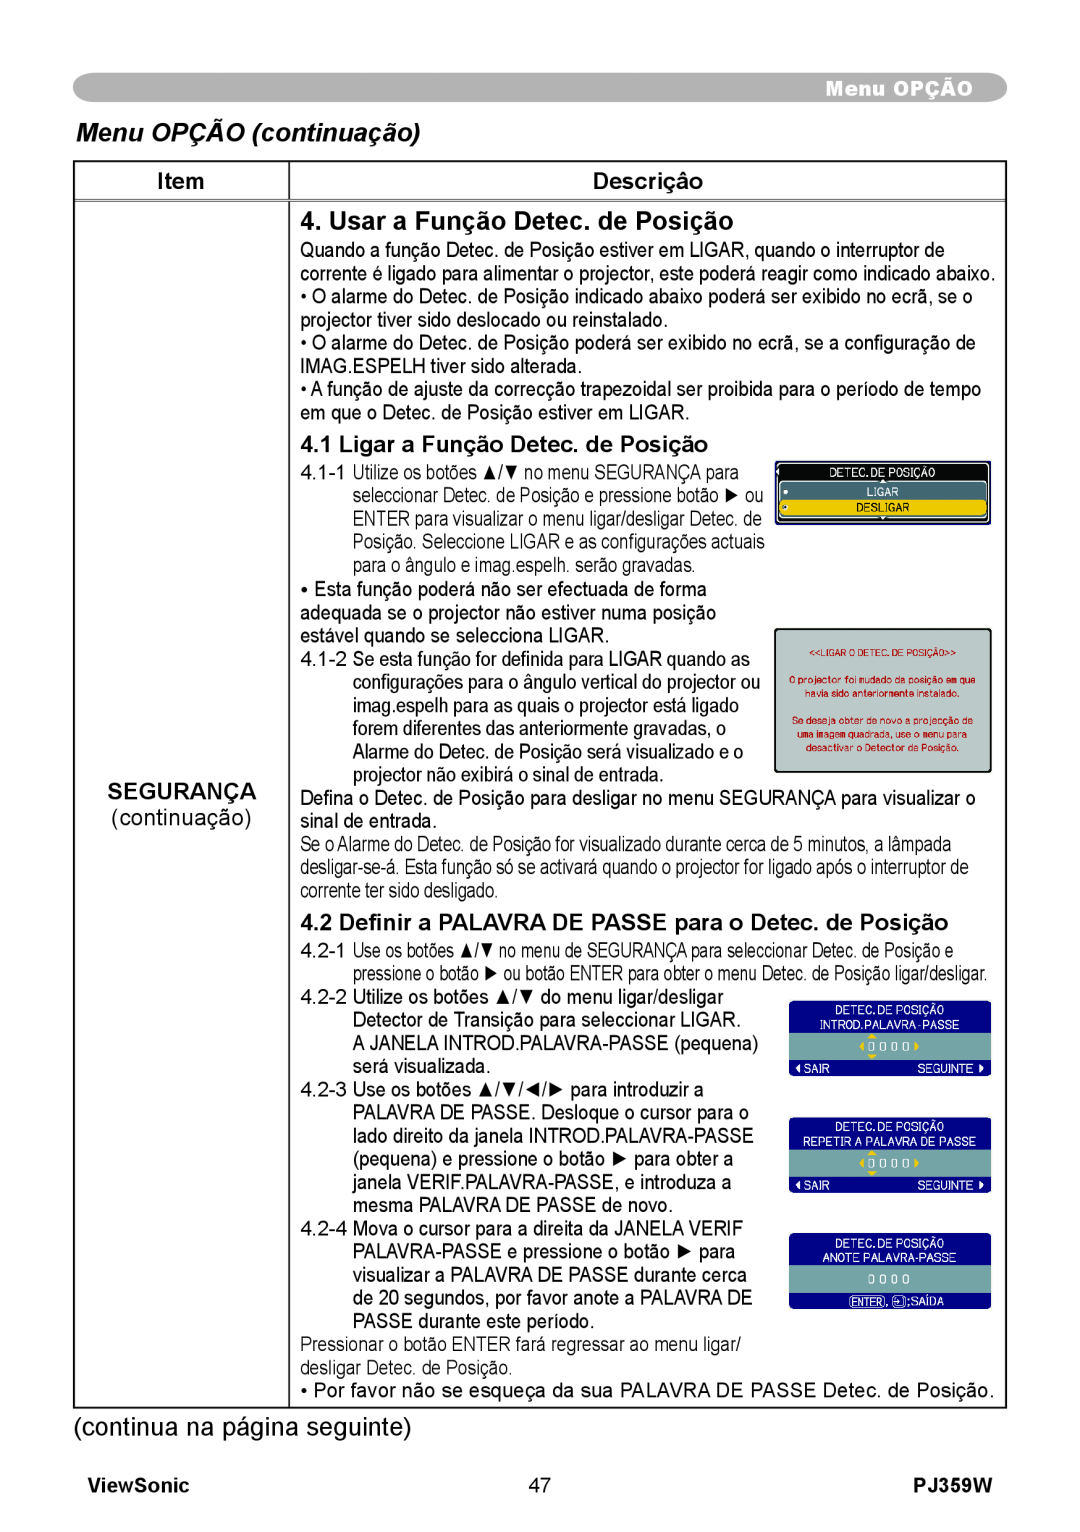 ViewSonic manual Usar a Função Detec. de Posição, Menu OPÇÃO continuação, Descriçâo, Segurança, ViewSonic, PJ359W 